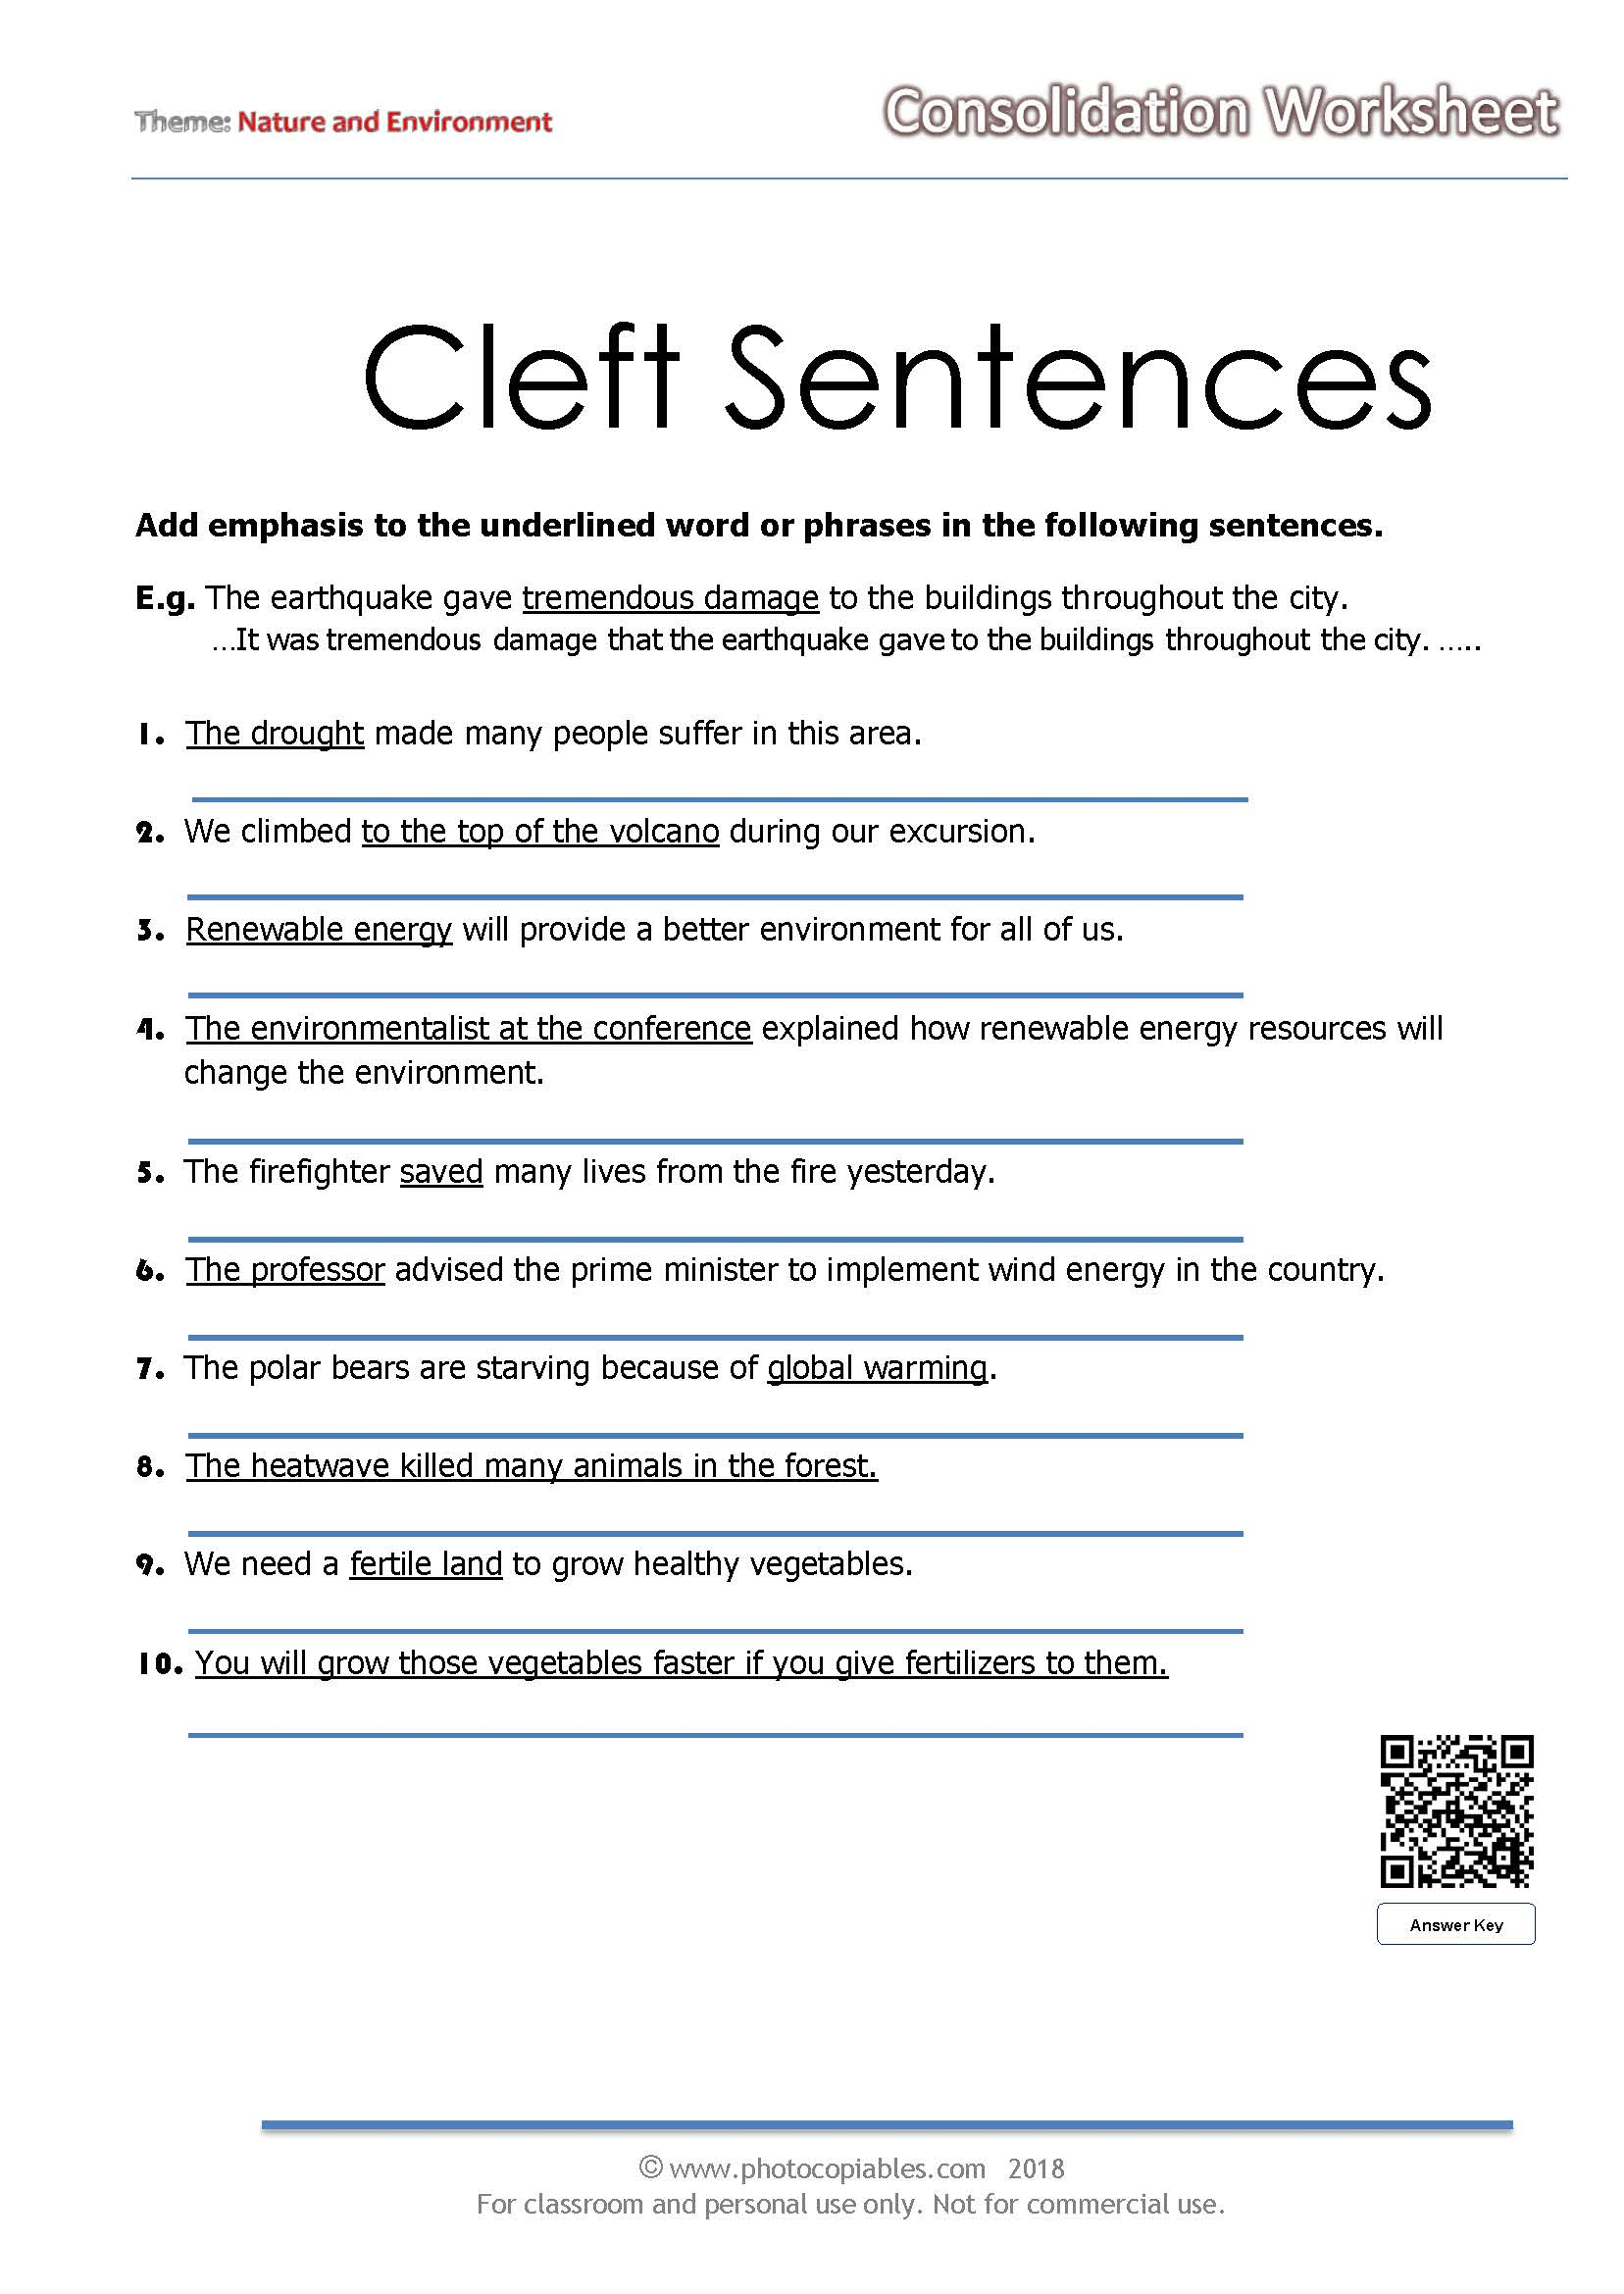 Cleft Sentences Exercises C1 Pdf